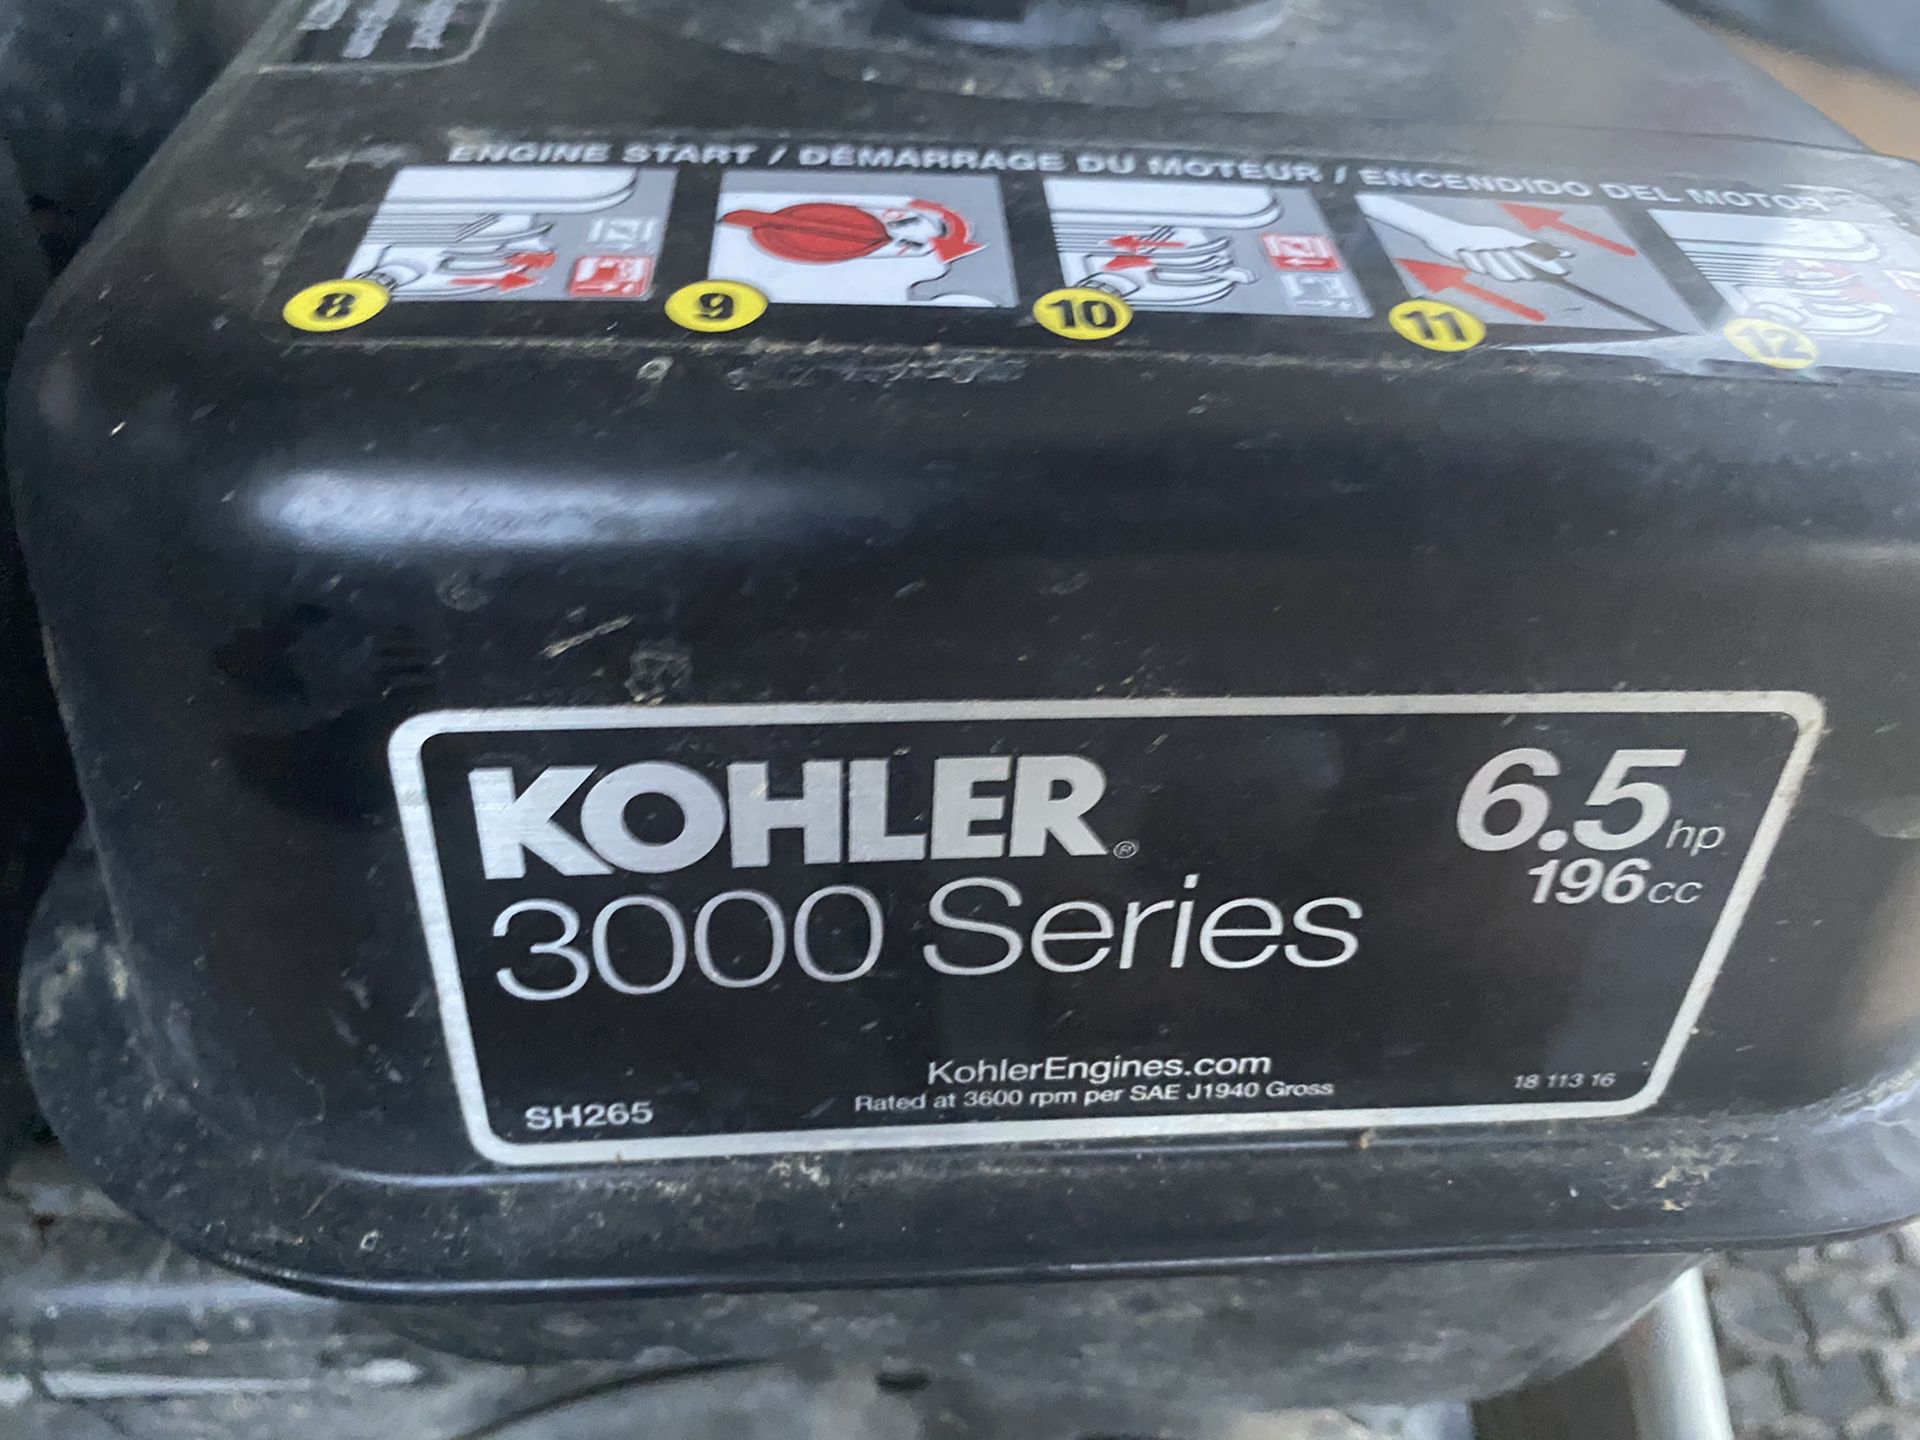 Koehler pressure washer